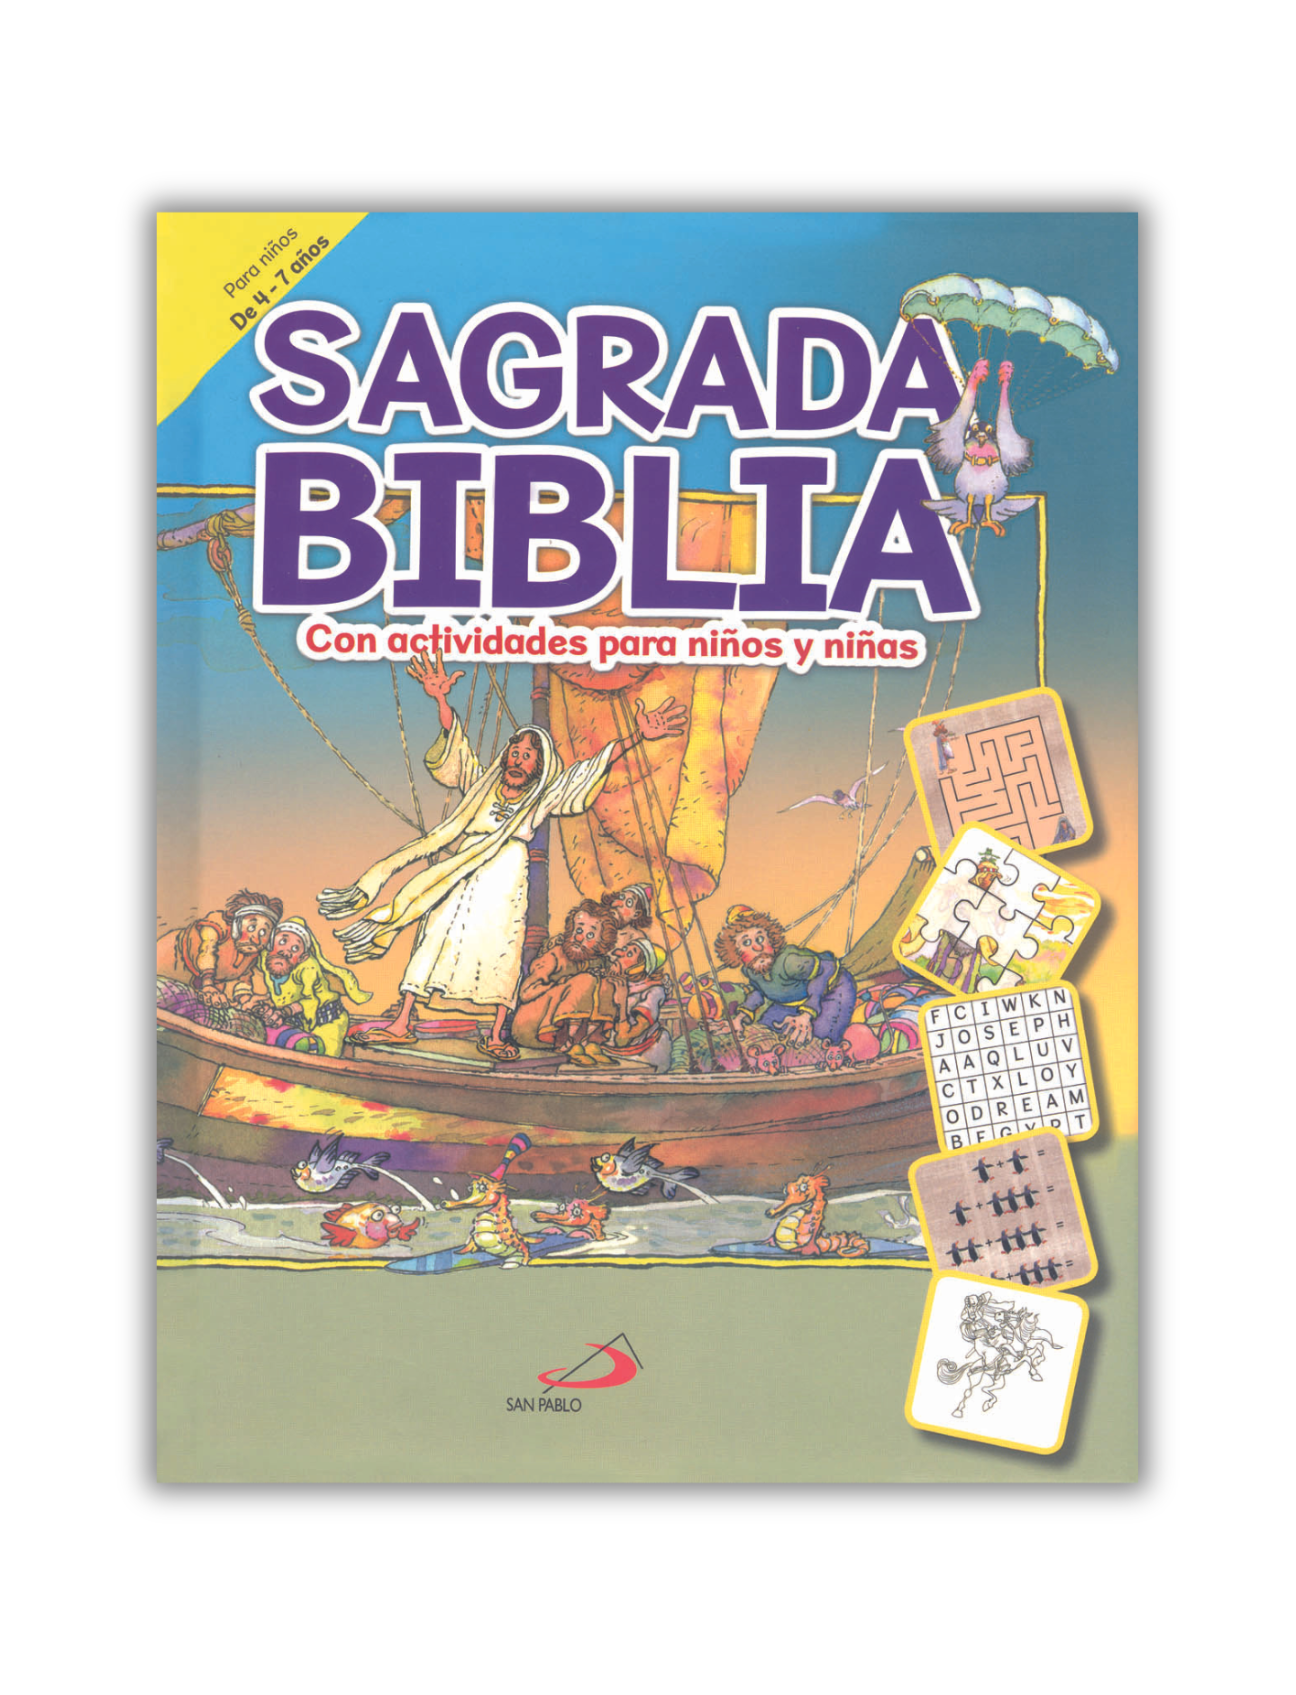 SAGRADA BIBLIA CON ACTIVIDADES PARA NIÑOS Y NIÑAS